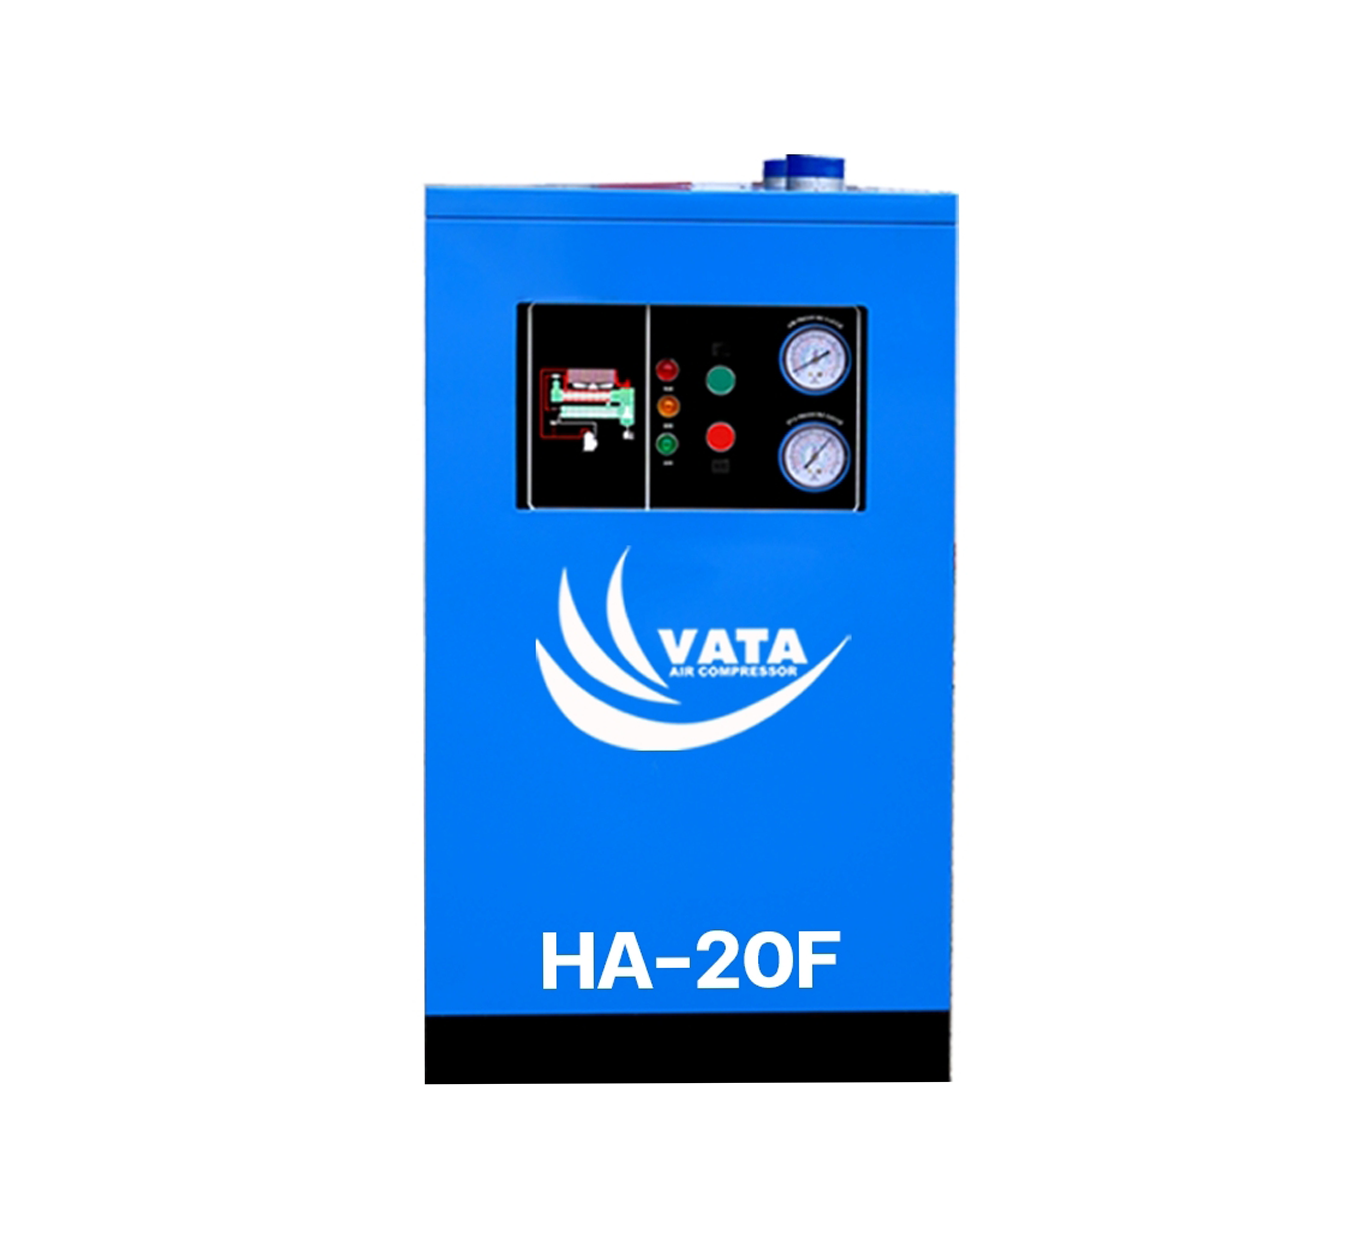 เครื่องทำลมแห้ง Refrigerated Air Dryer แบรนด์ VATA รุ่น HA-20F ขนาด 0.6 kw. ไฟฟ้า 220V รับประกันสินค้า 1 ปี ตามเงื่อนไขของบริษัทฯ